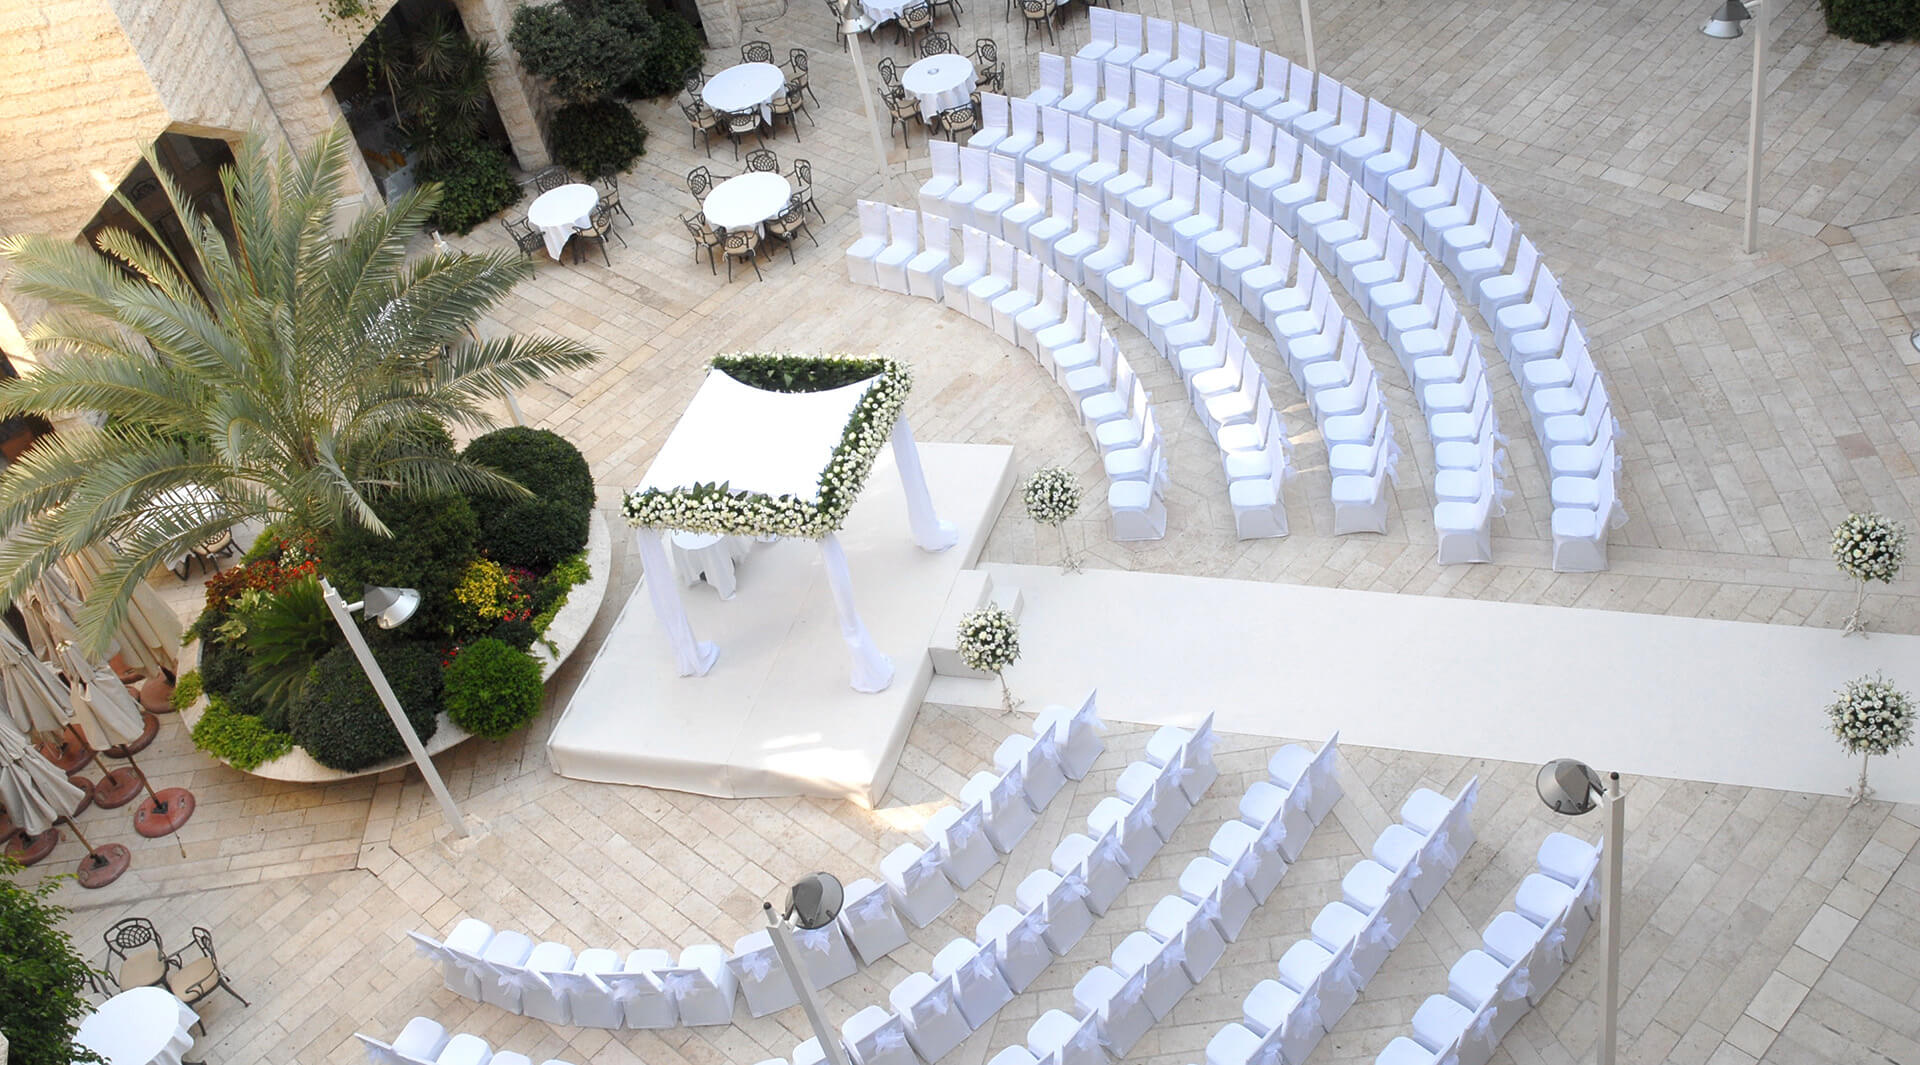 Weddings in Israel